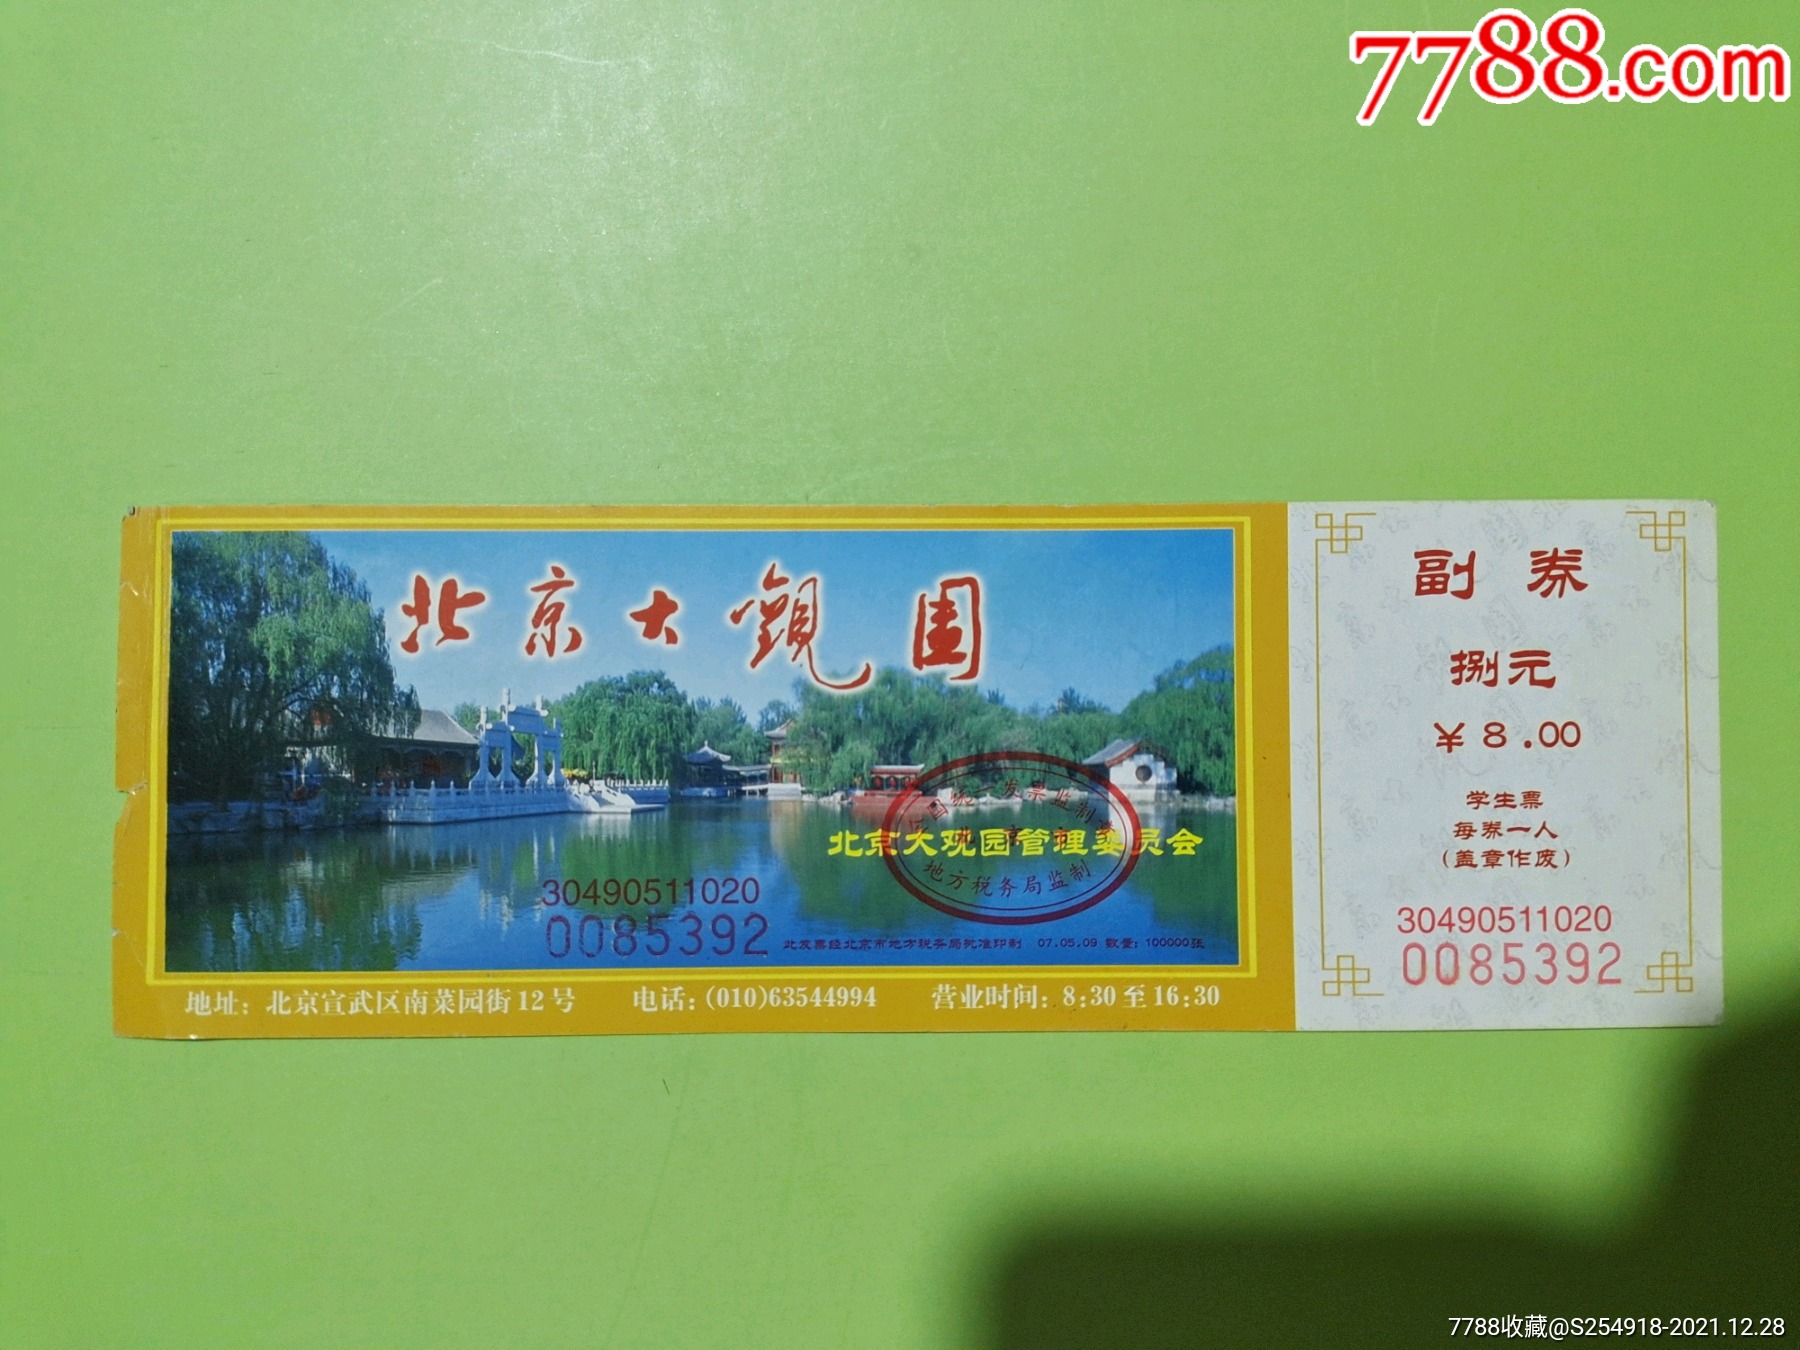 北京200元年票包含景点图片